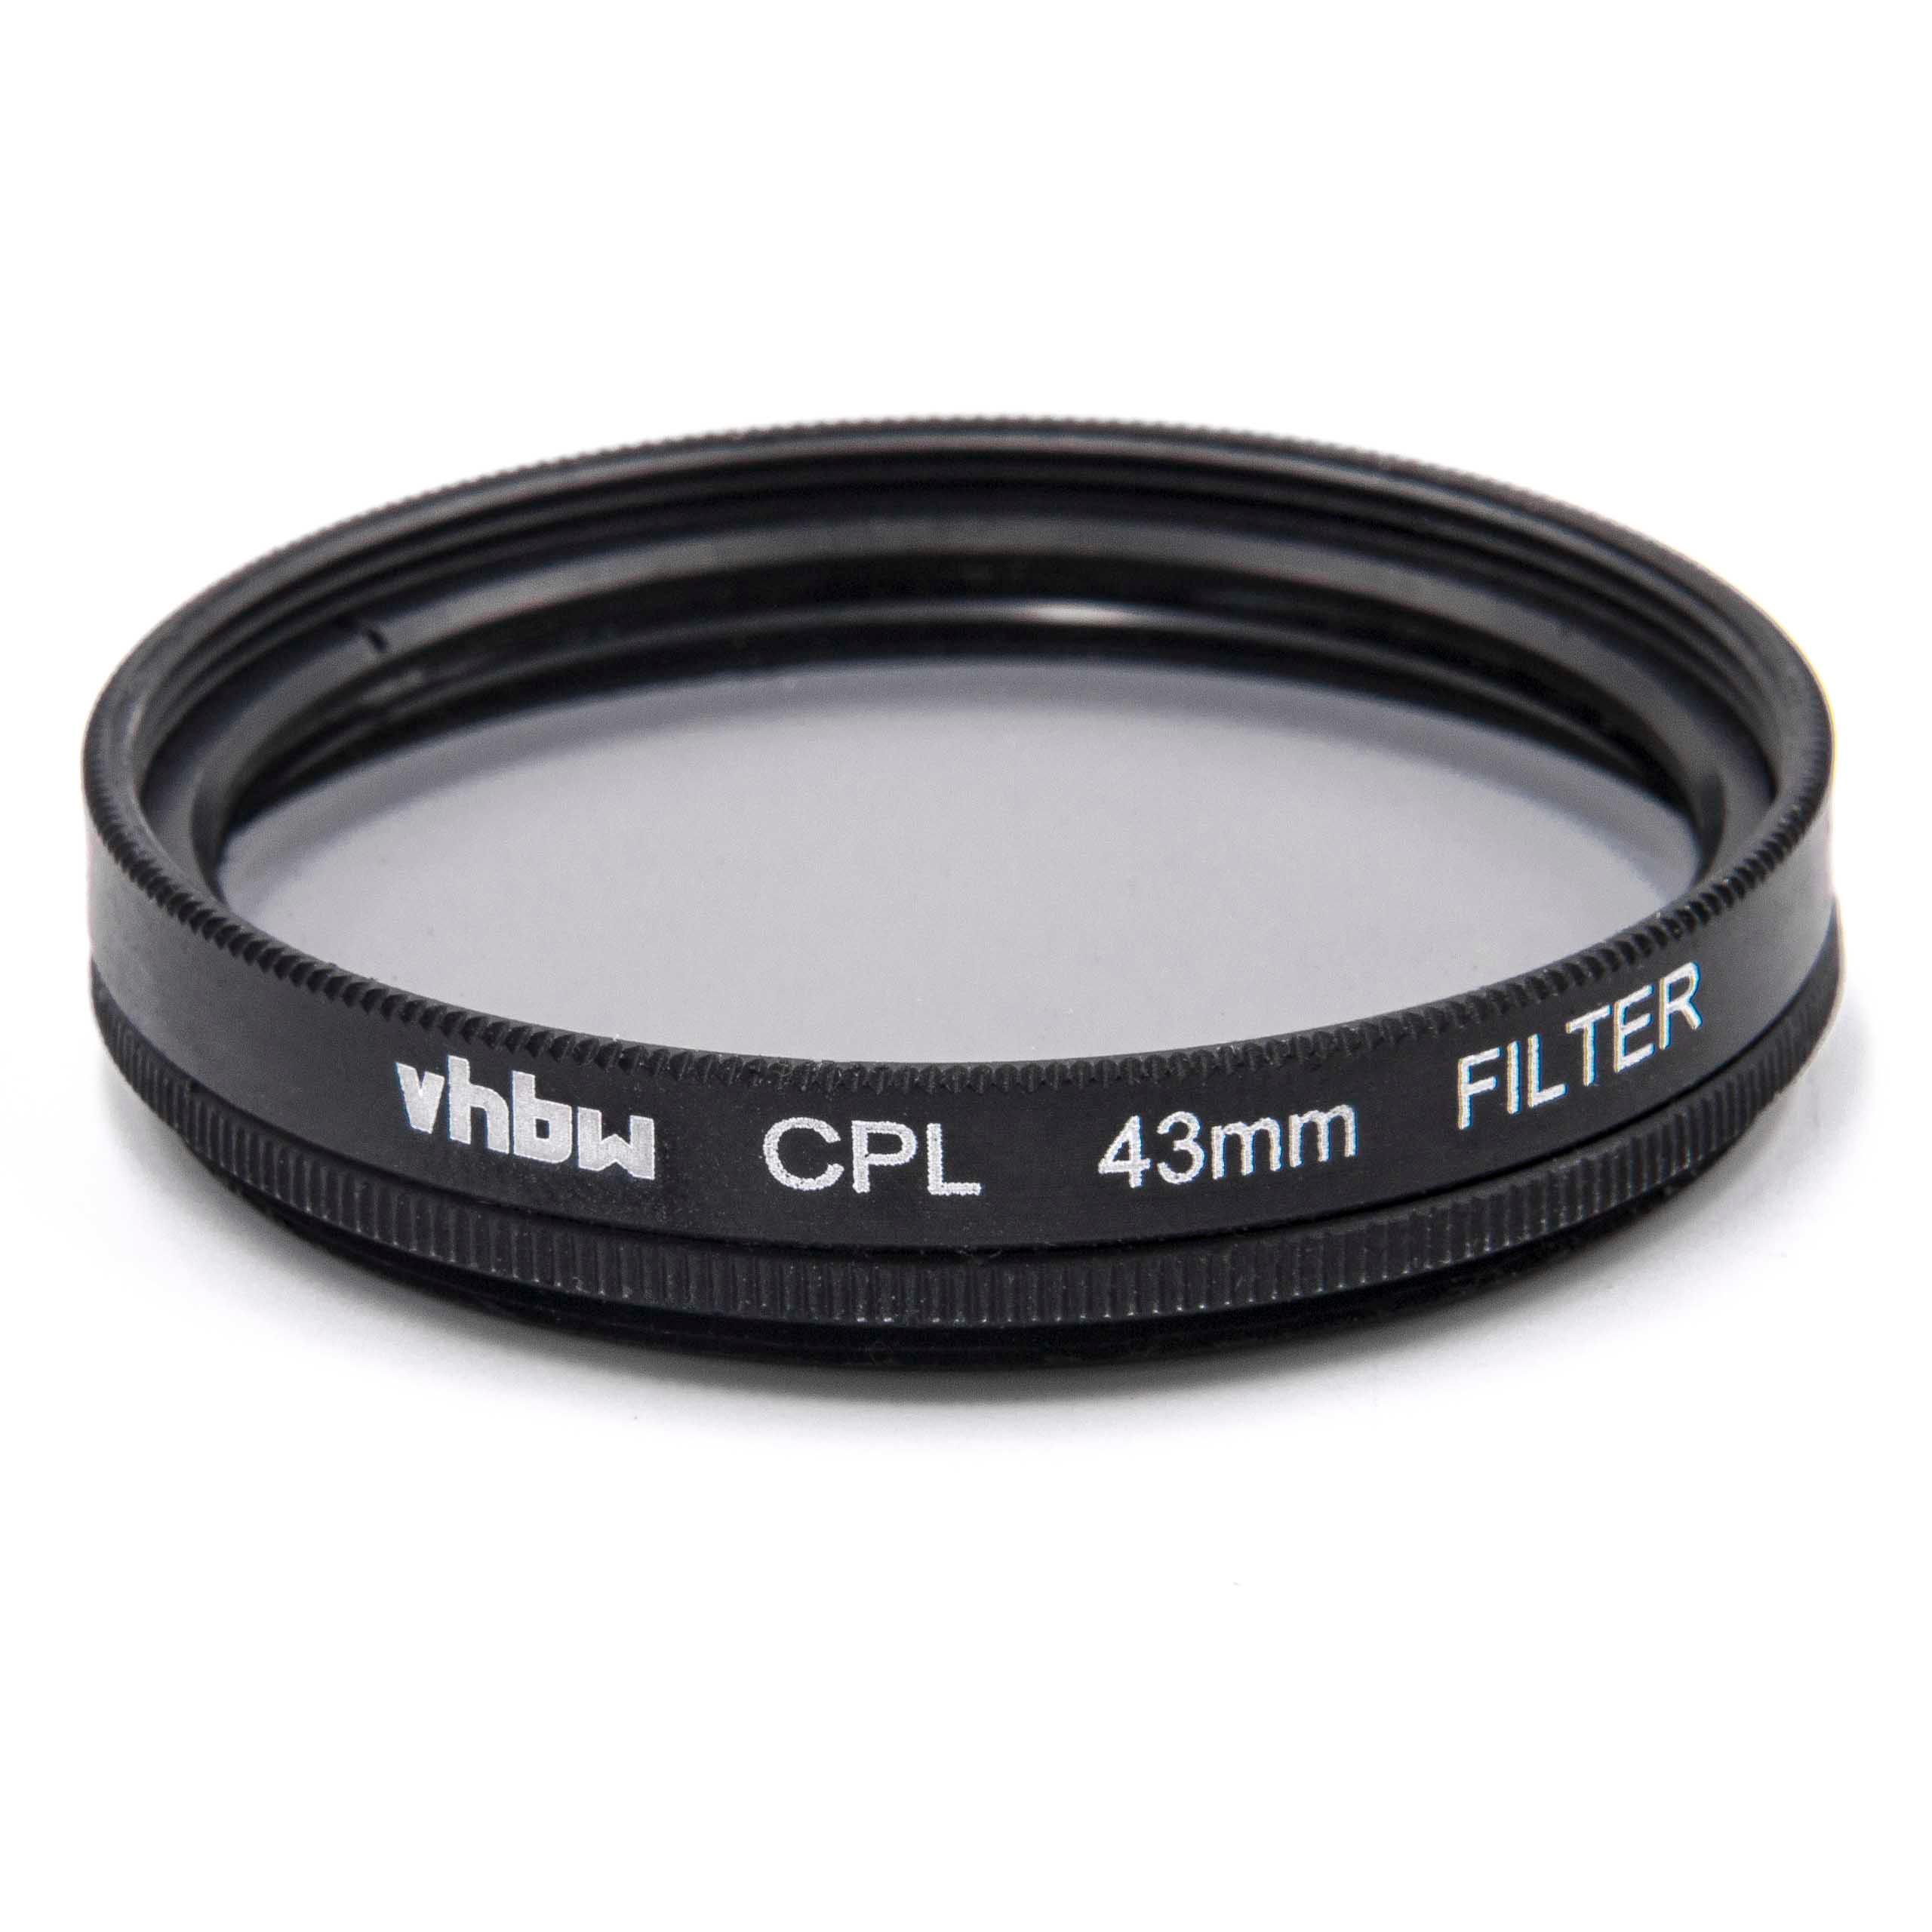 Filtre polarisant pour appareil photo et objectif de diamètre 43 mm - Filtre CPL